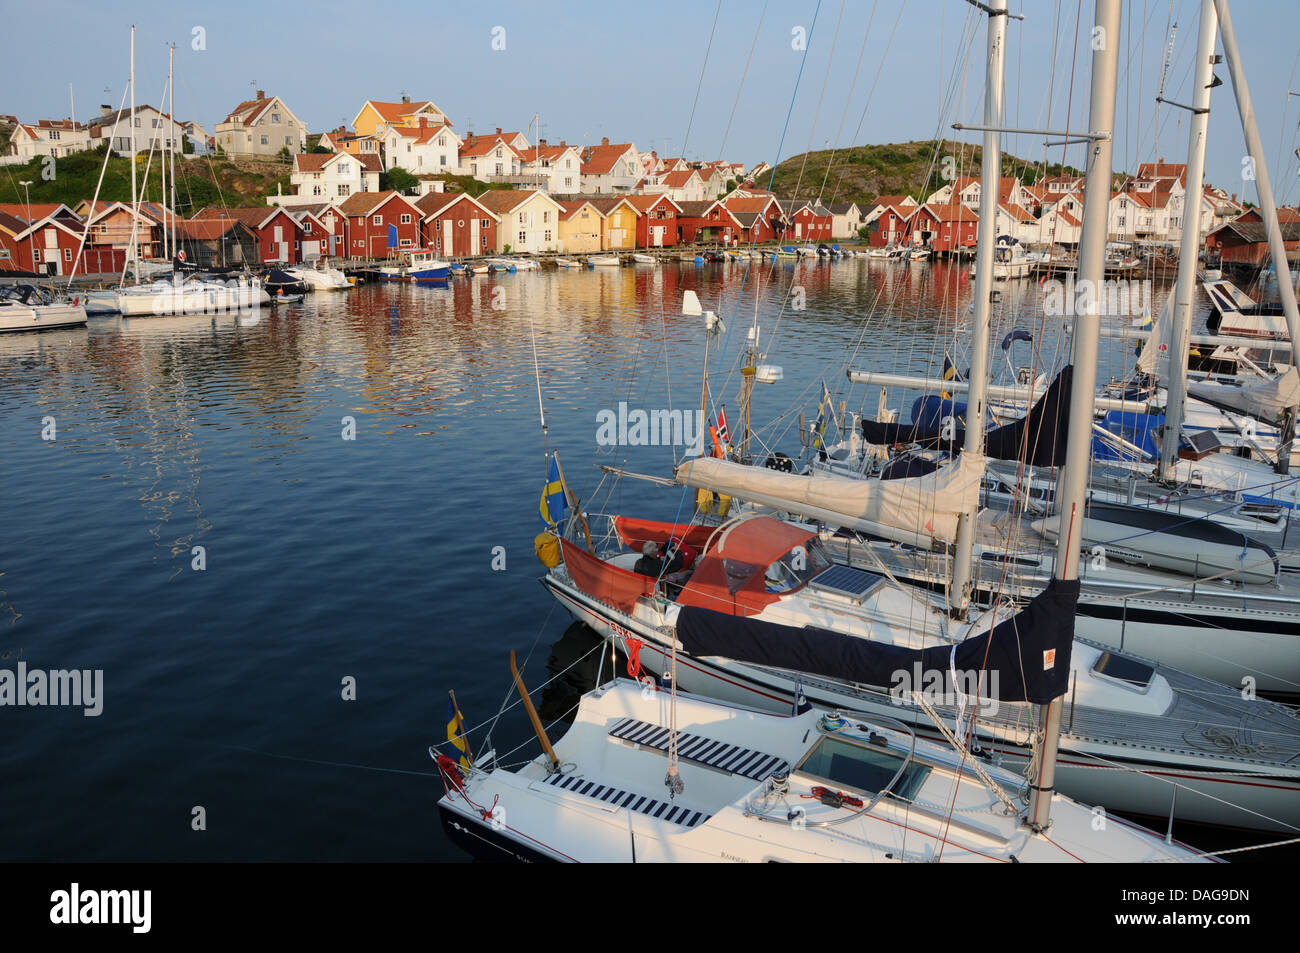 Fischerdorf 0f Grungsund an Schwedens Westküste mit Yachten, hölzerne Docks, Bootshäuser und bunte Häuser Stockfoto